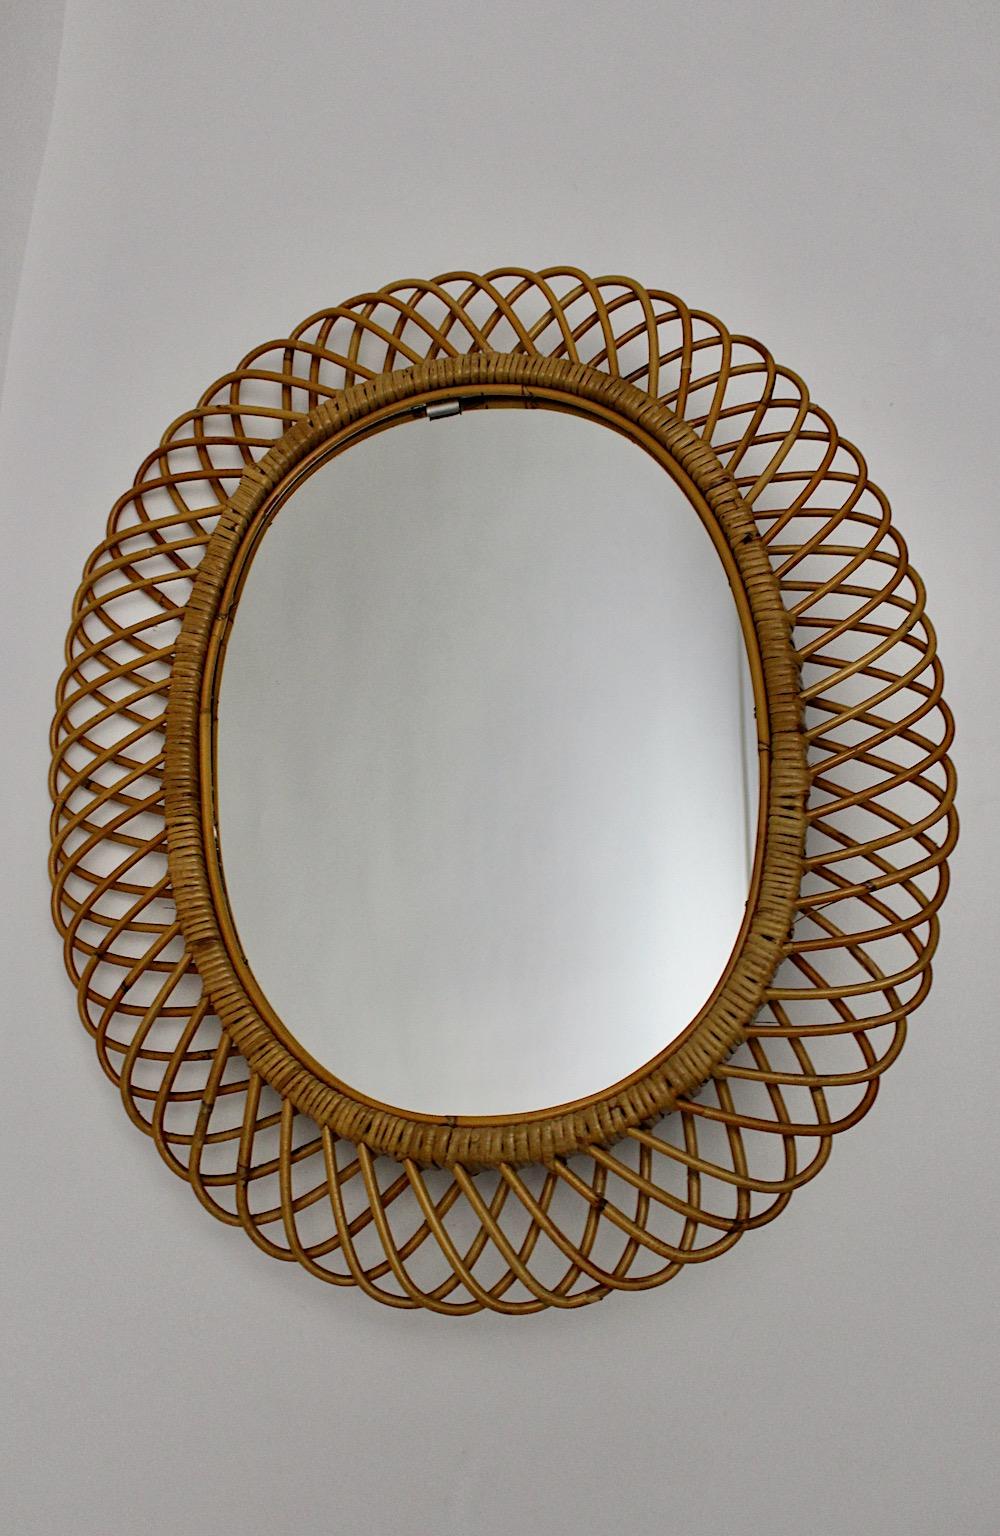 Miroir ou miroir mural organique en rotin et verre miroir, vintage Mid-Century Modern, Italie, années 1960.
Le grand format de ce miroir en forme de soleil permet de l'accrocher dans une entrée ou autour d'une cheminée. Ce miroir charmant en forme